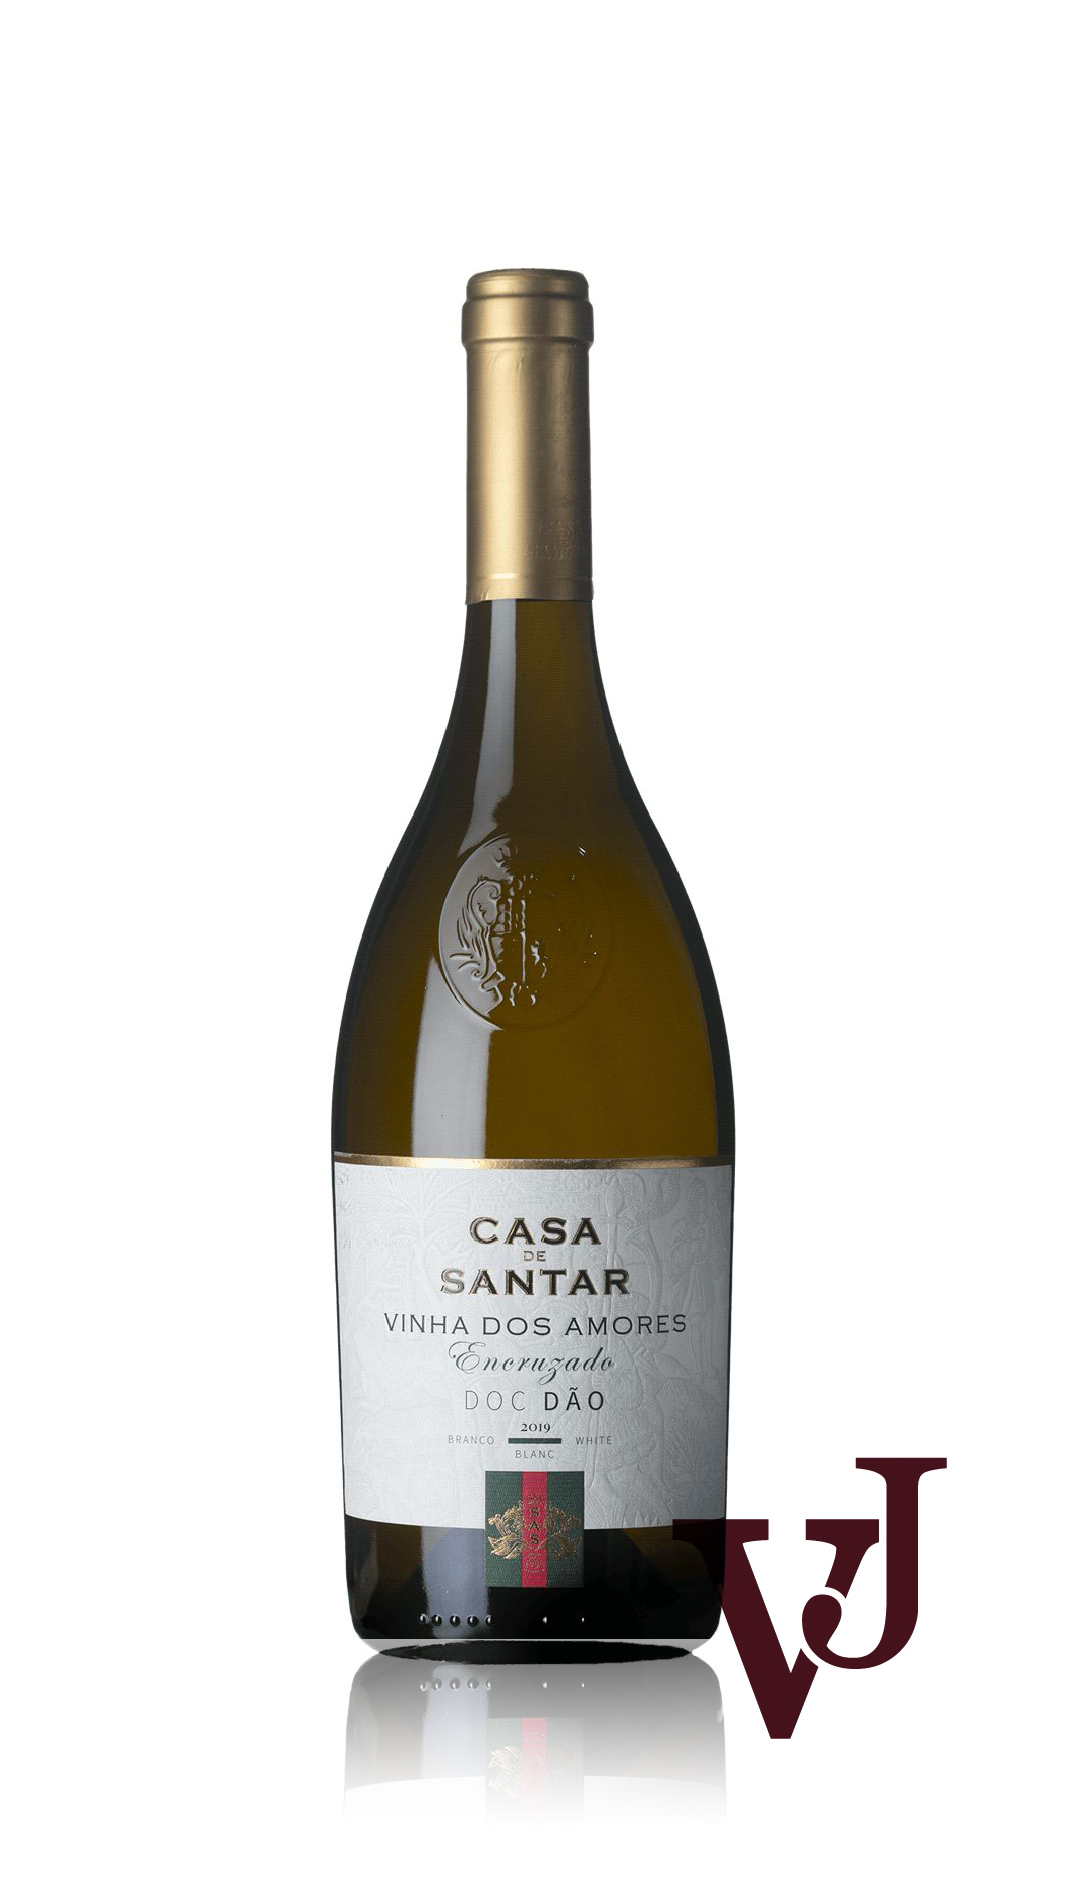 Vitt Vin - Casa de Santar Vinha dos Amores Encruzado 2019 artikel nummer 9441701 från producenten Global Wines SA från Portugal